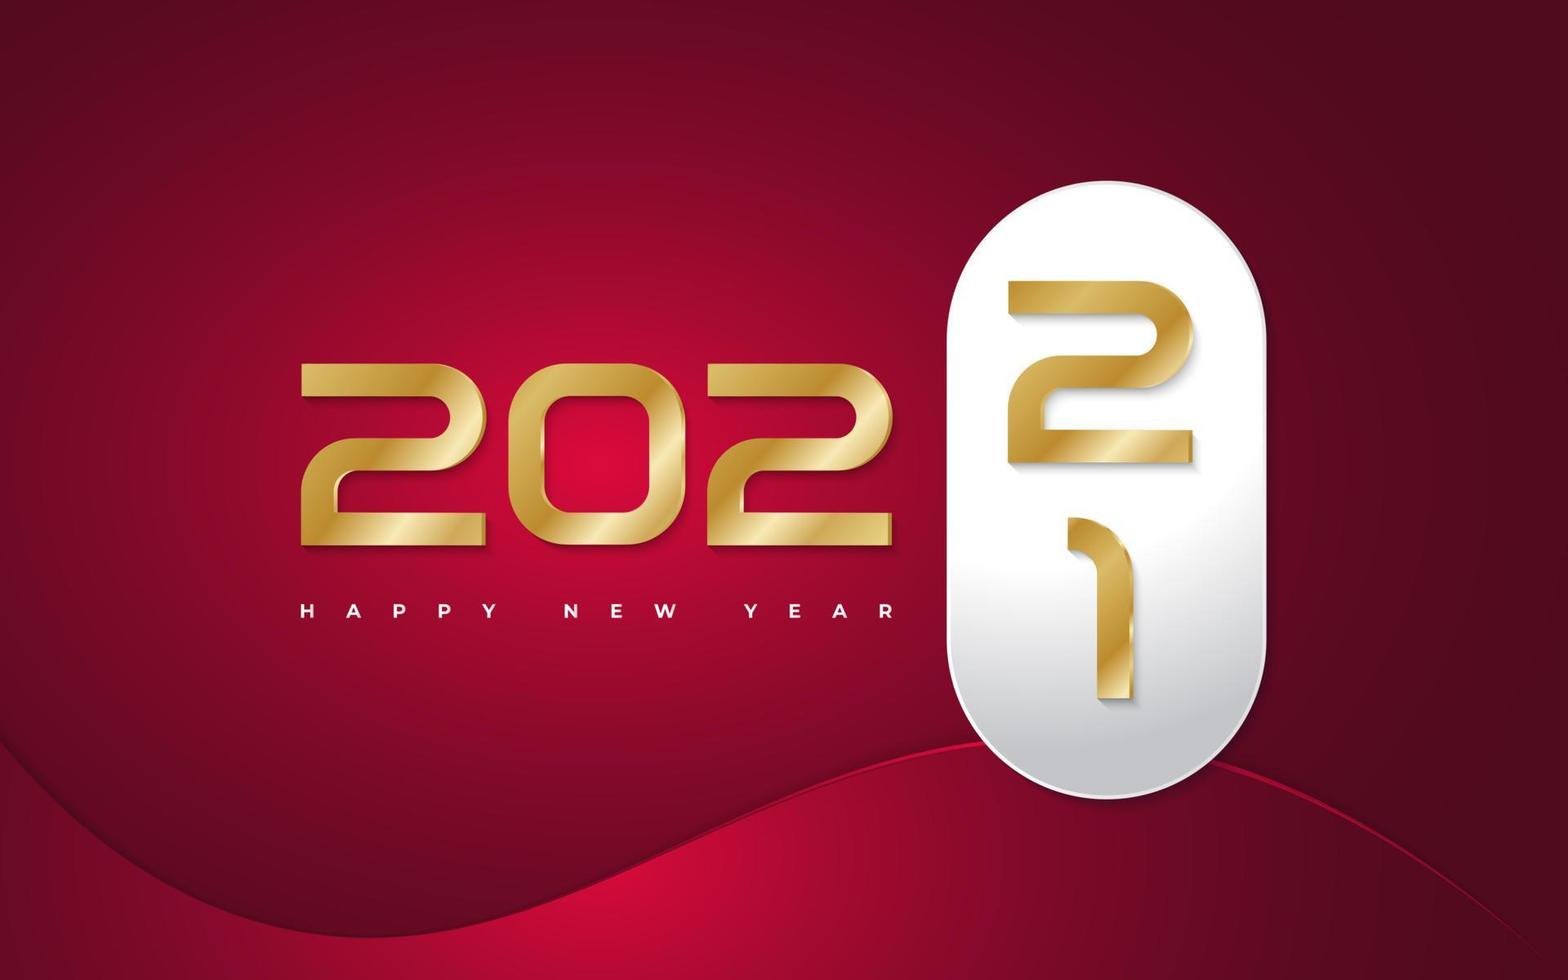 gott nytt år 2022 banner eller affischdesign med gyllene siffror på röd bakgrund. ny år ändra banner. nyårsfirande designmall för flygblad, affisch, broschyr, kort, banderoll eller vykort vektor